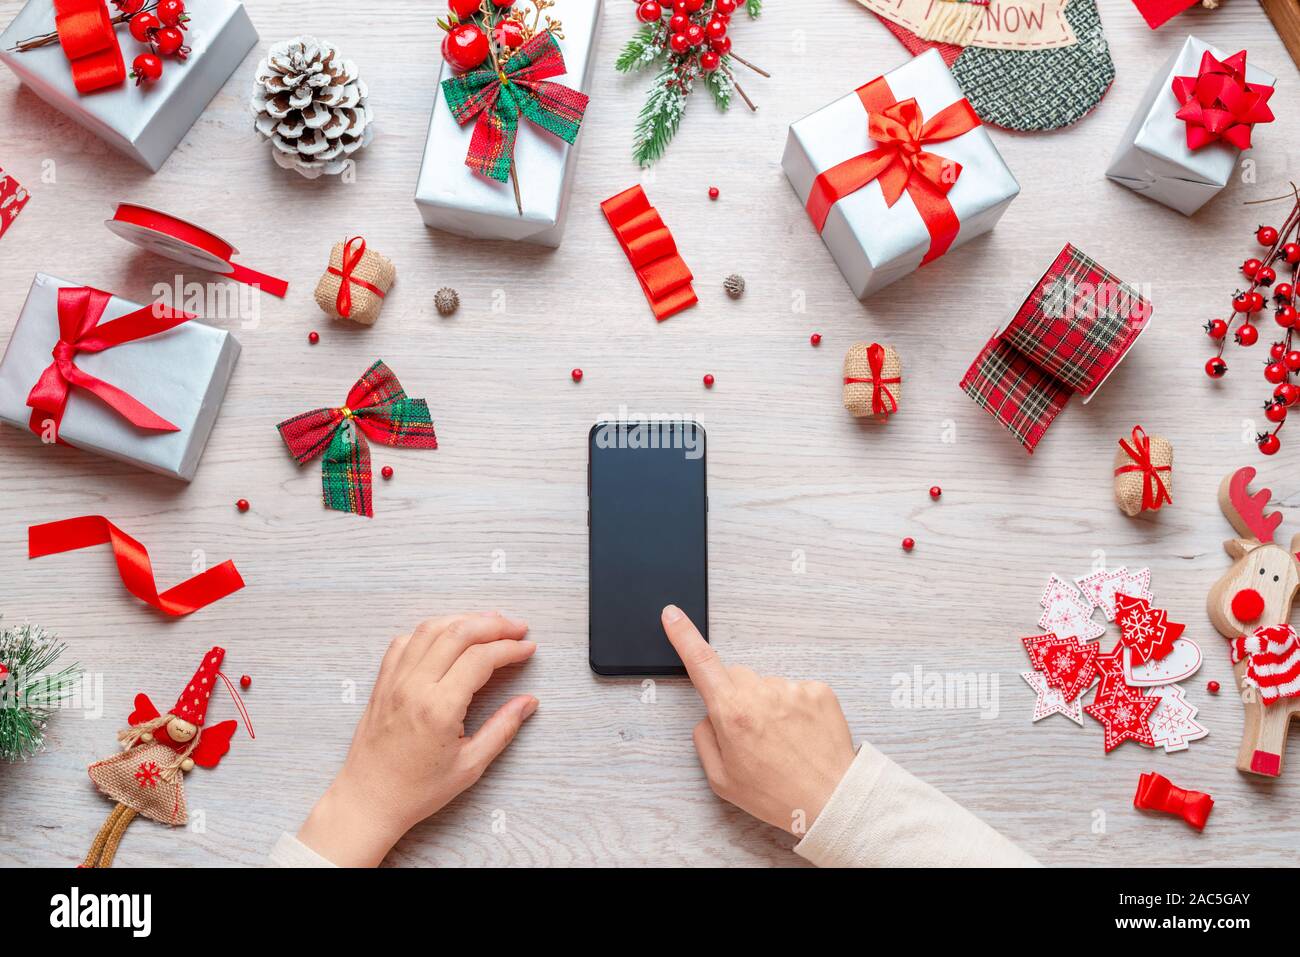 Smart phone sur table en bois entourée de décorations de Noël. Girl touch téléphone affichage vierge. Mise à plat, vue supérieure de la composition. Banque D'Images